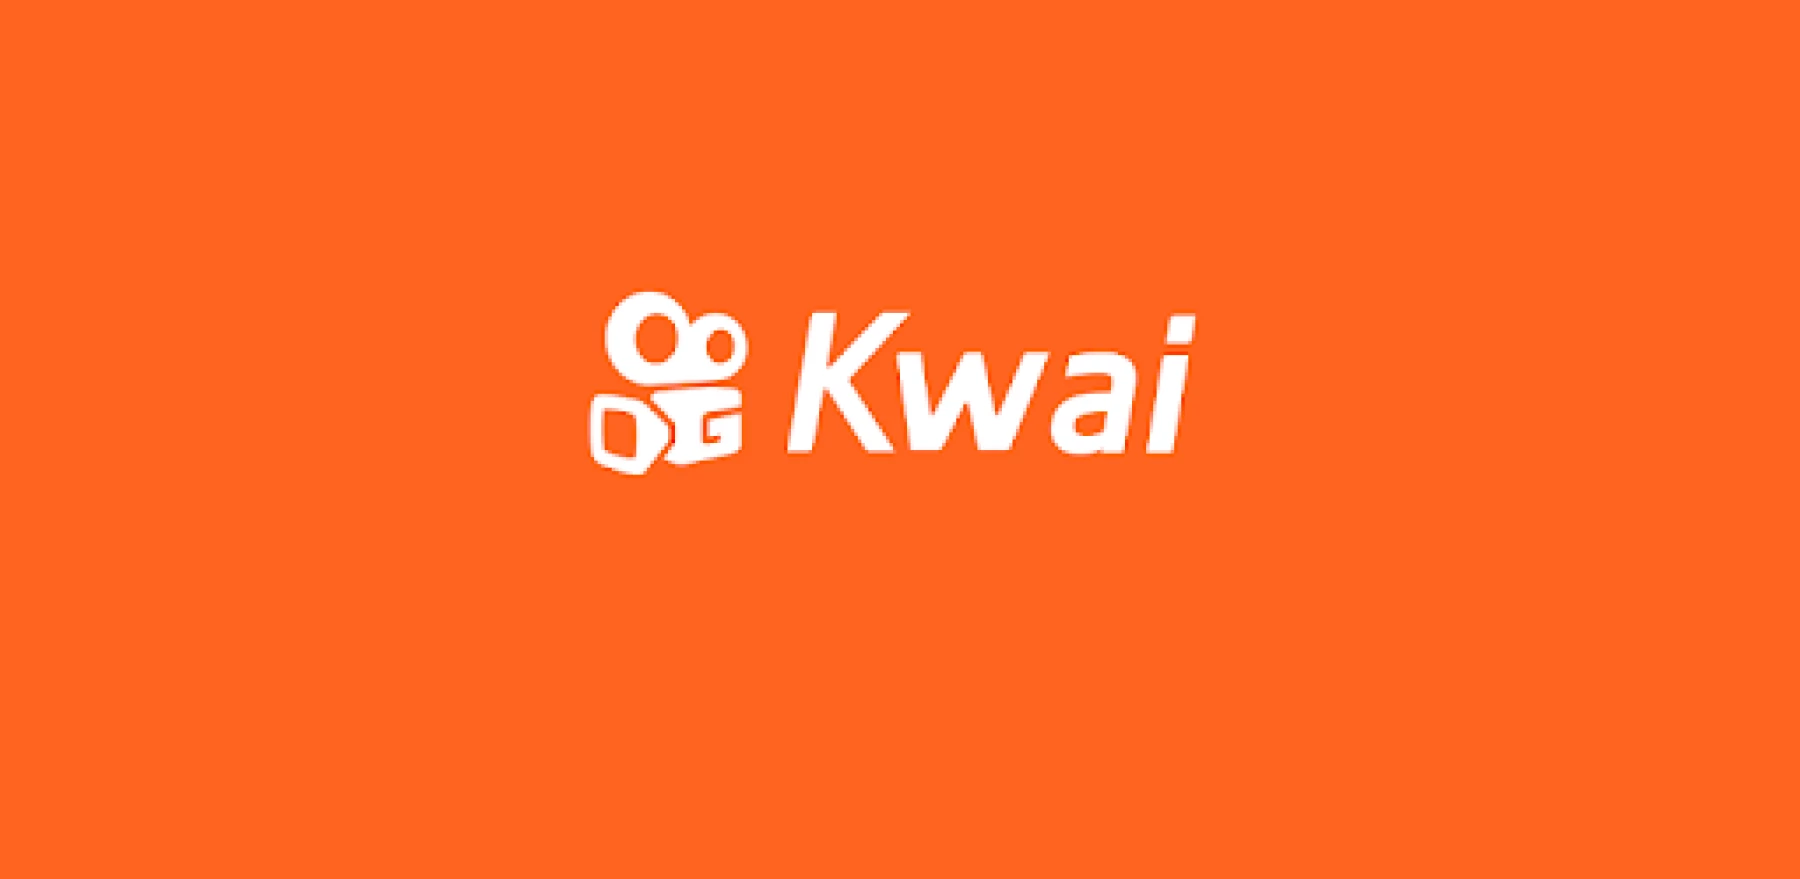 Kwai ha tomado fuerza en Latinoamérica  (foto: Expansión)